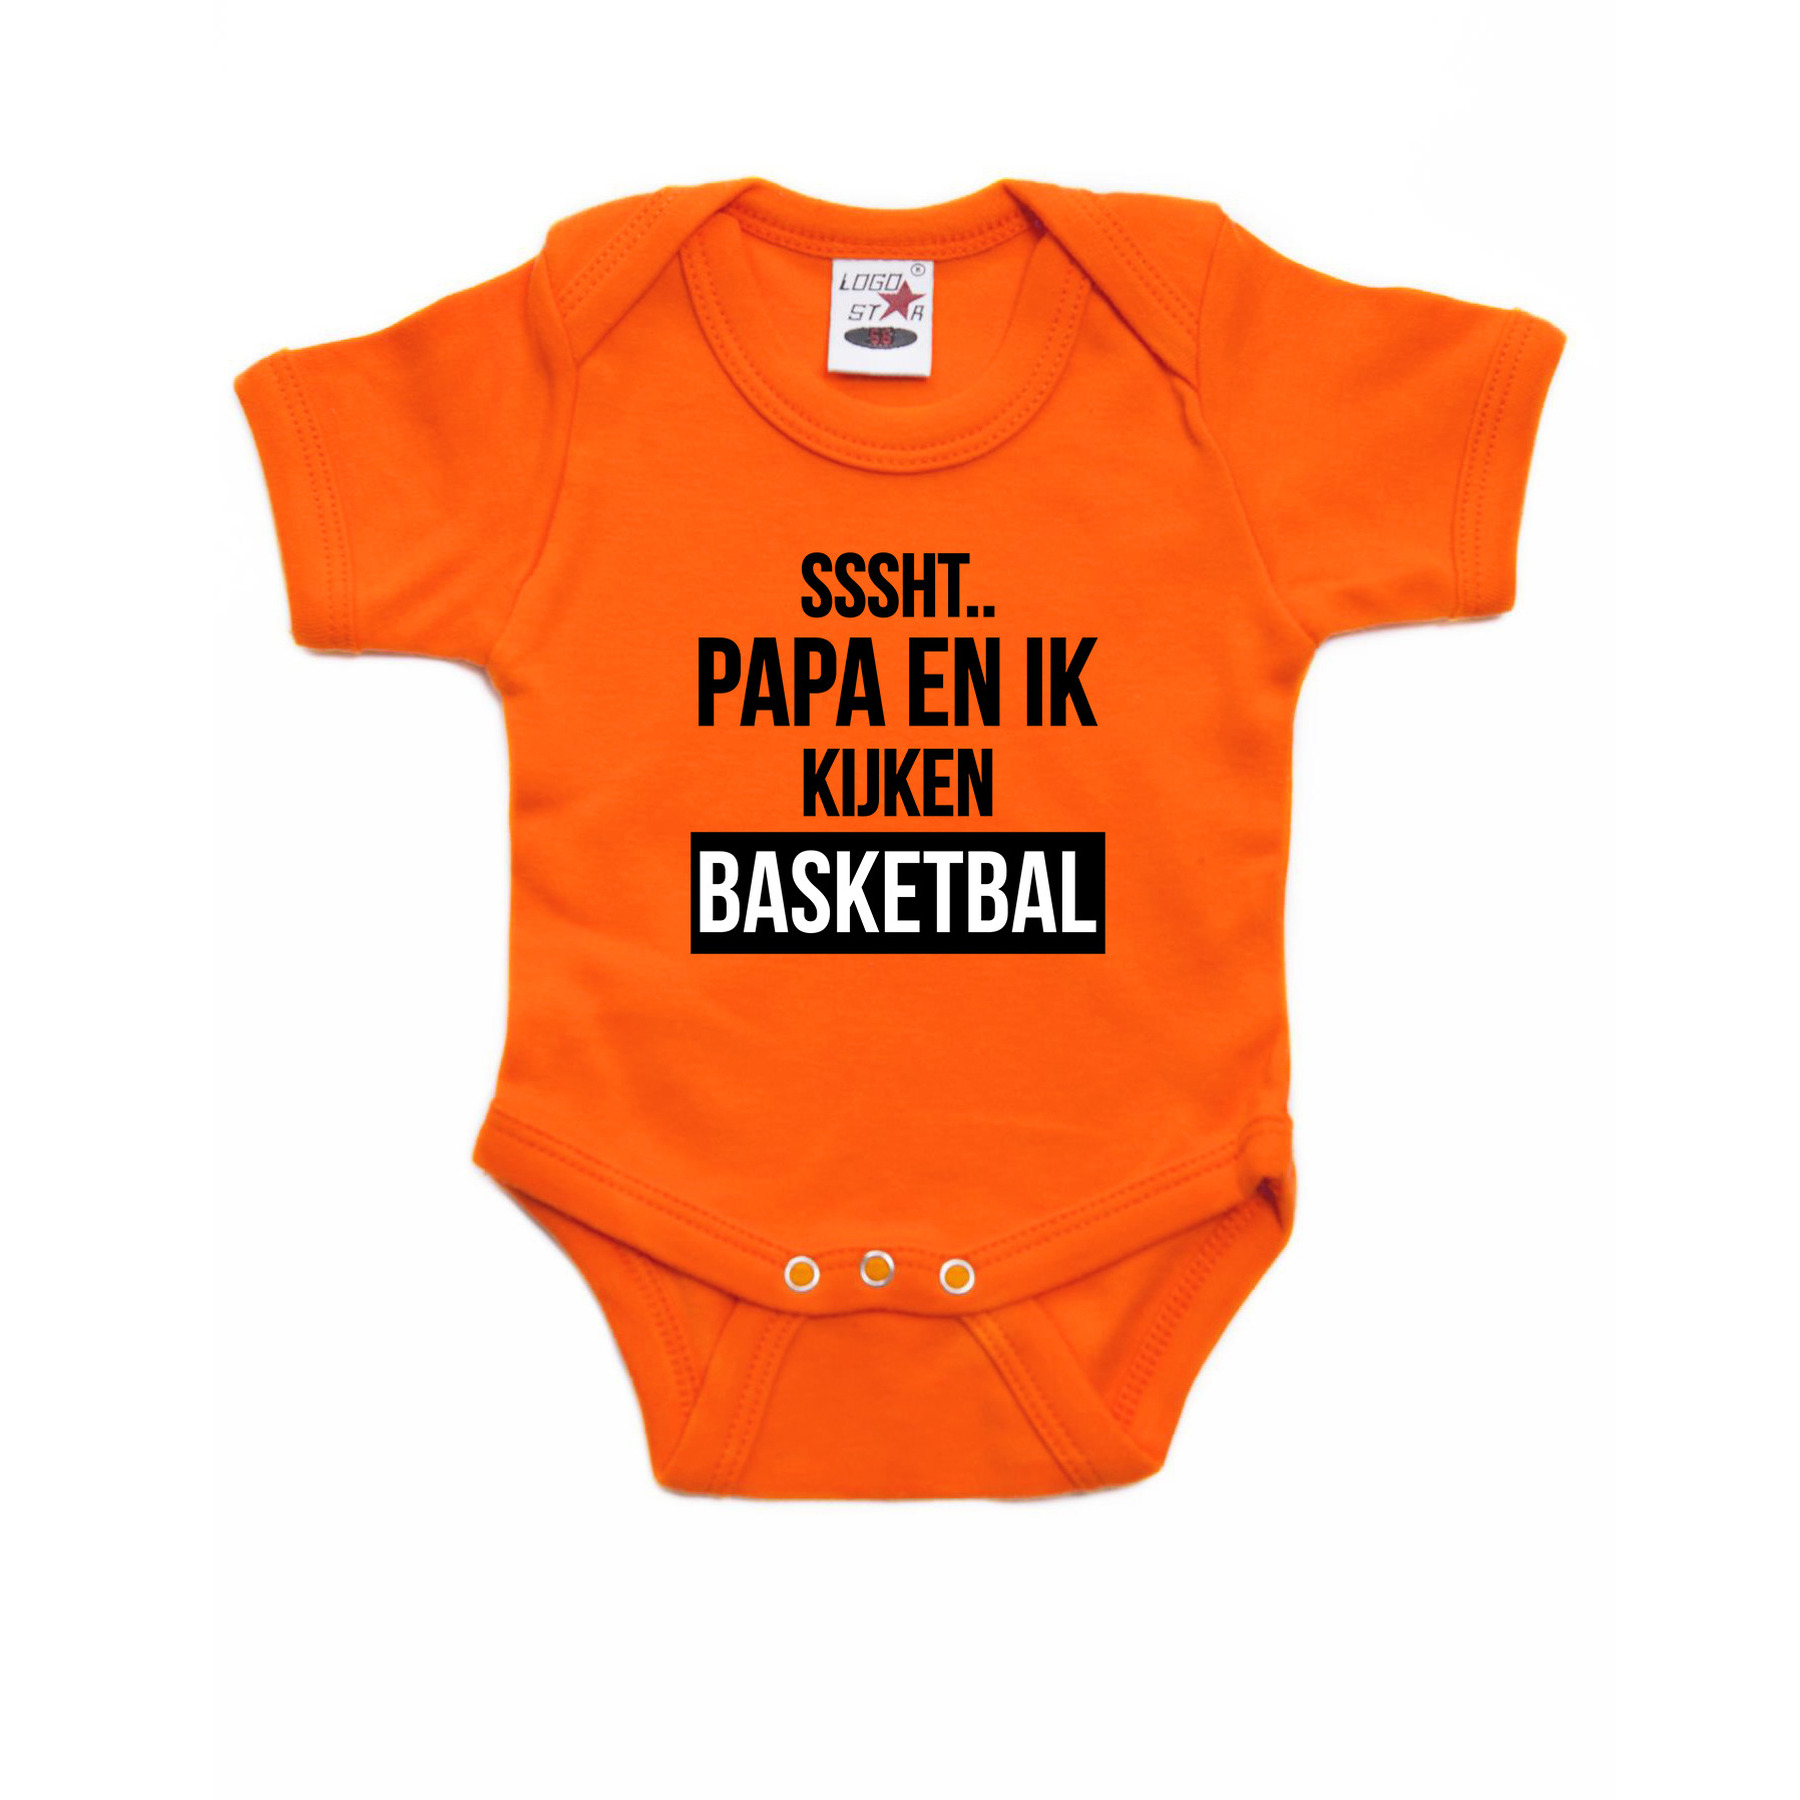 Sssht kijken basketbal baby rompertje oranje Holland-Nederland-EK-WK supporter